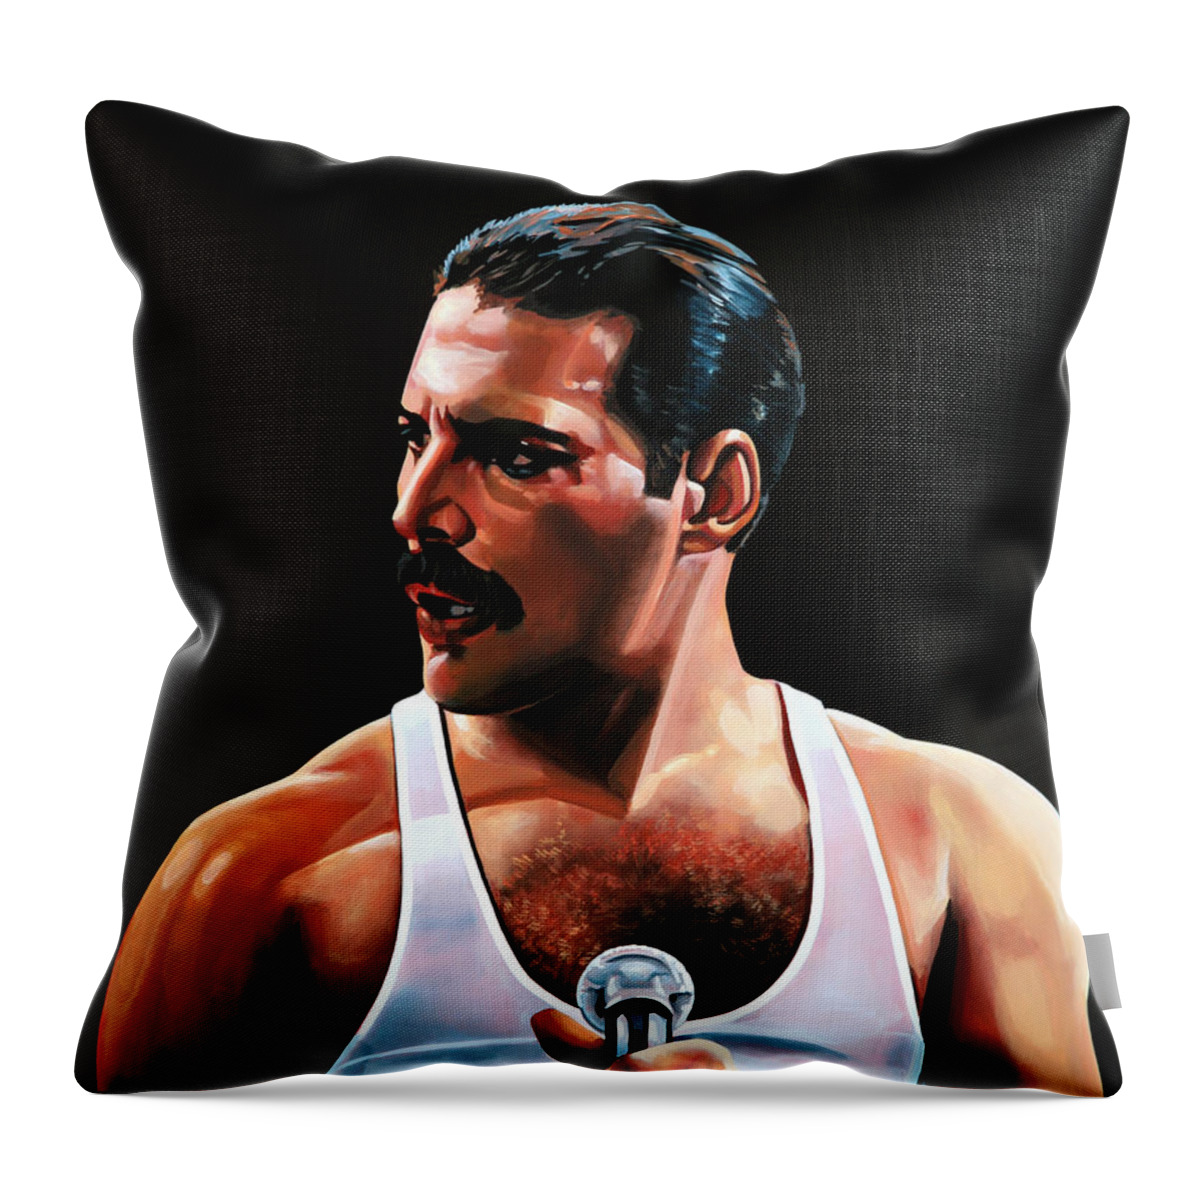 Freddie Mercury Throw Pillow featuring the painting Freddie Mercury by Paul Meijering